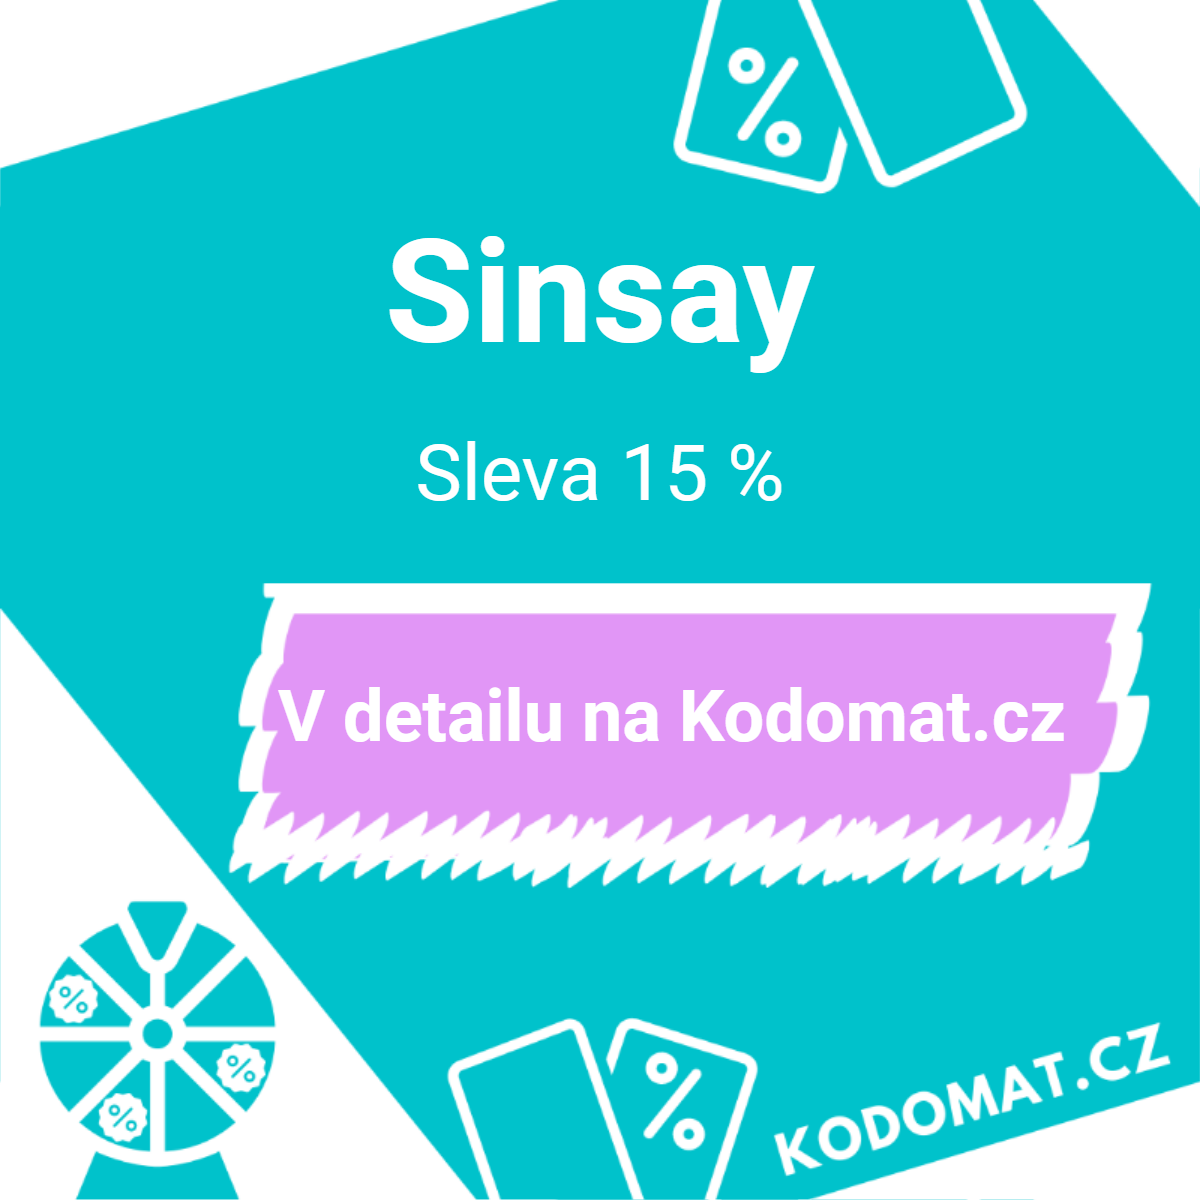 Sinsay slevový kód: Sleva 15 %